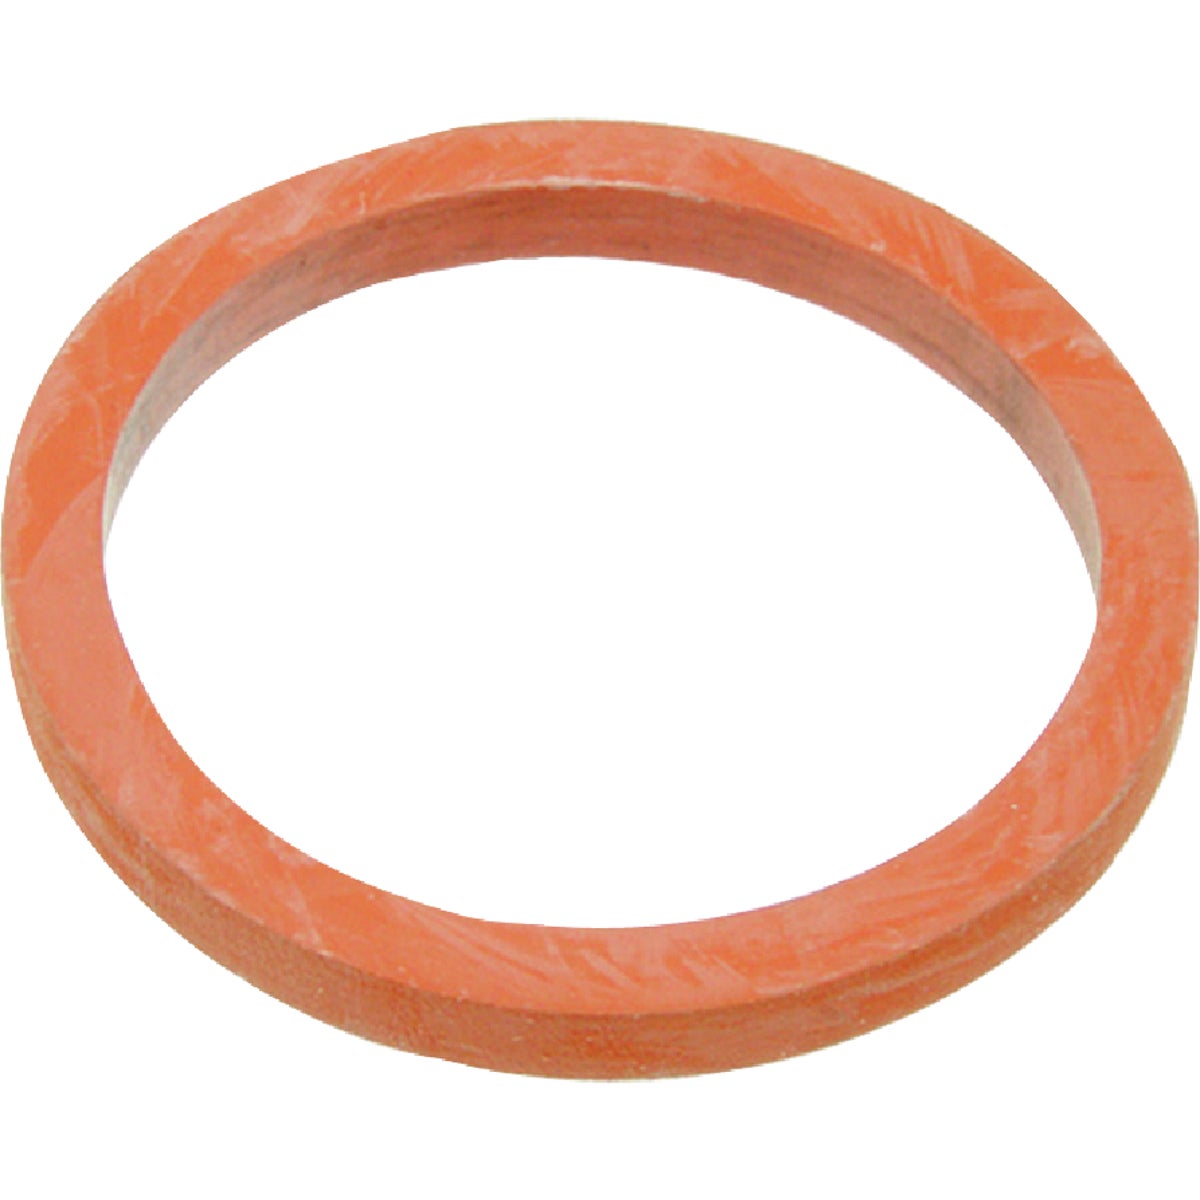 Danco 1-1/2 In. Orange Rubber Slip Joint Washer